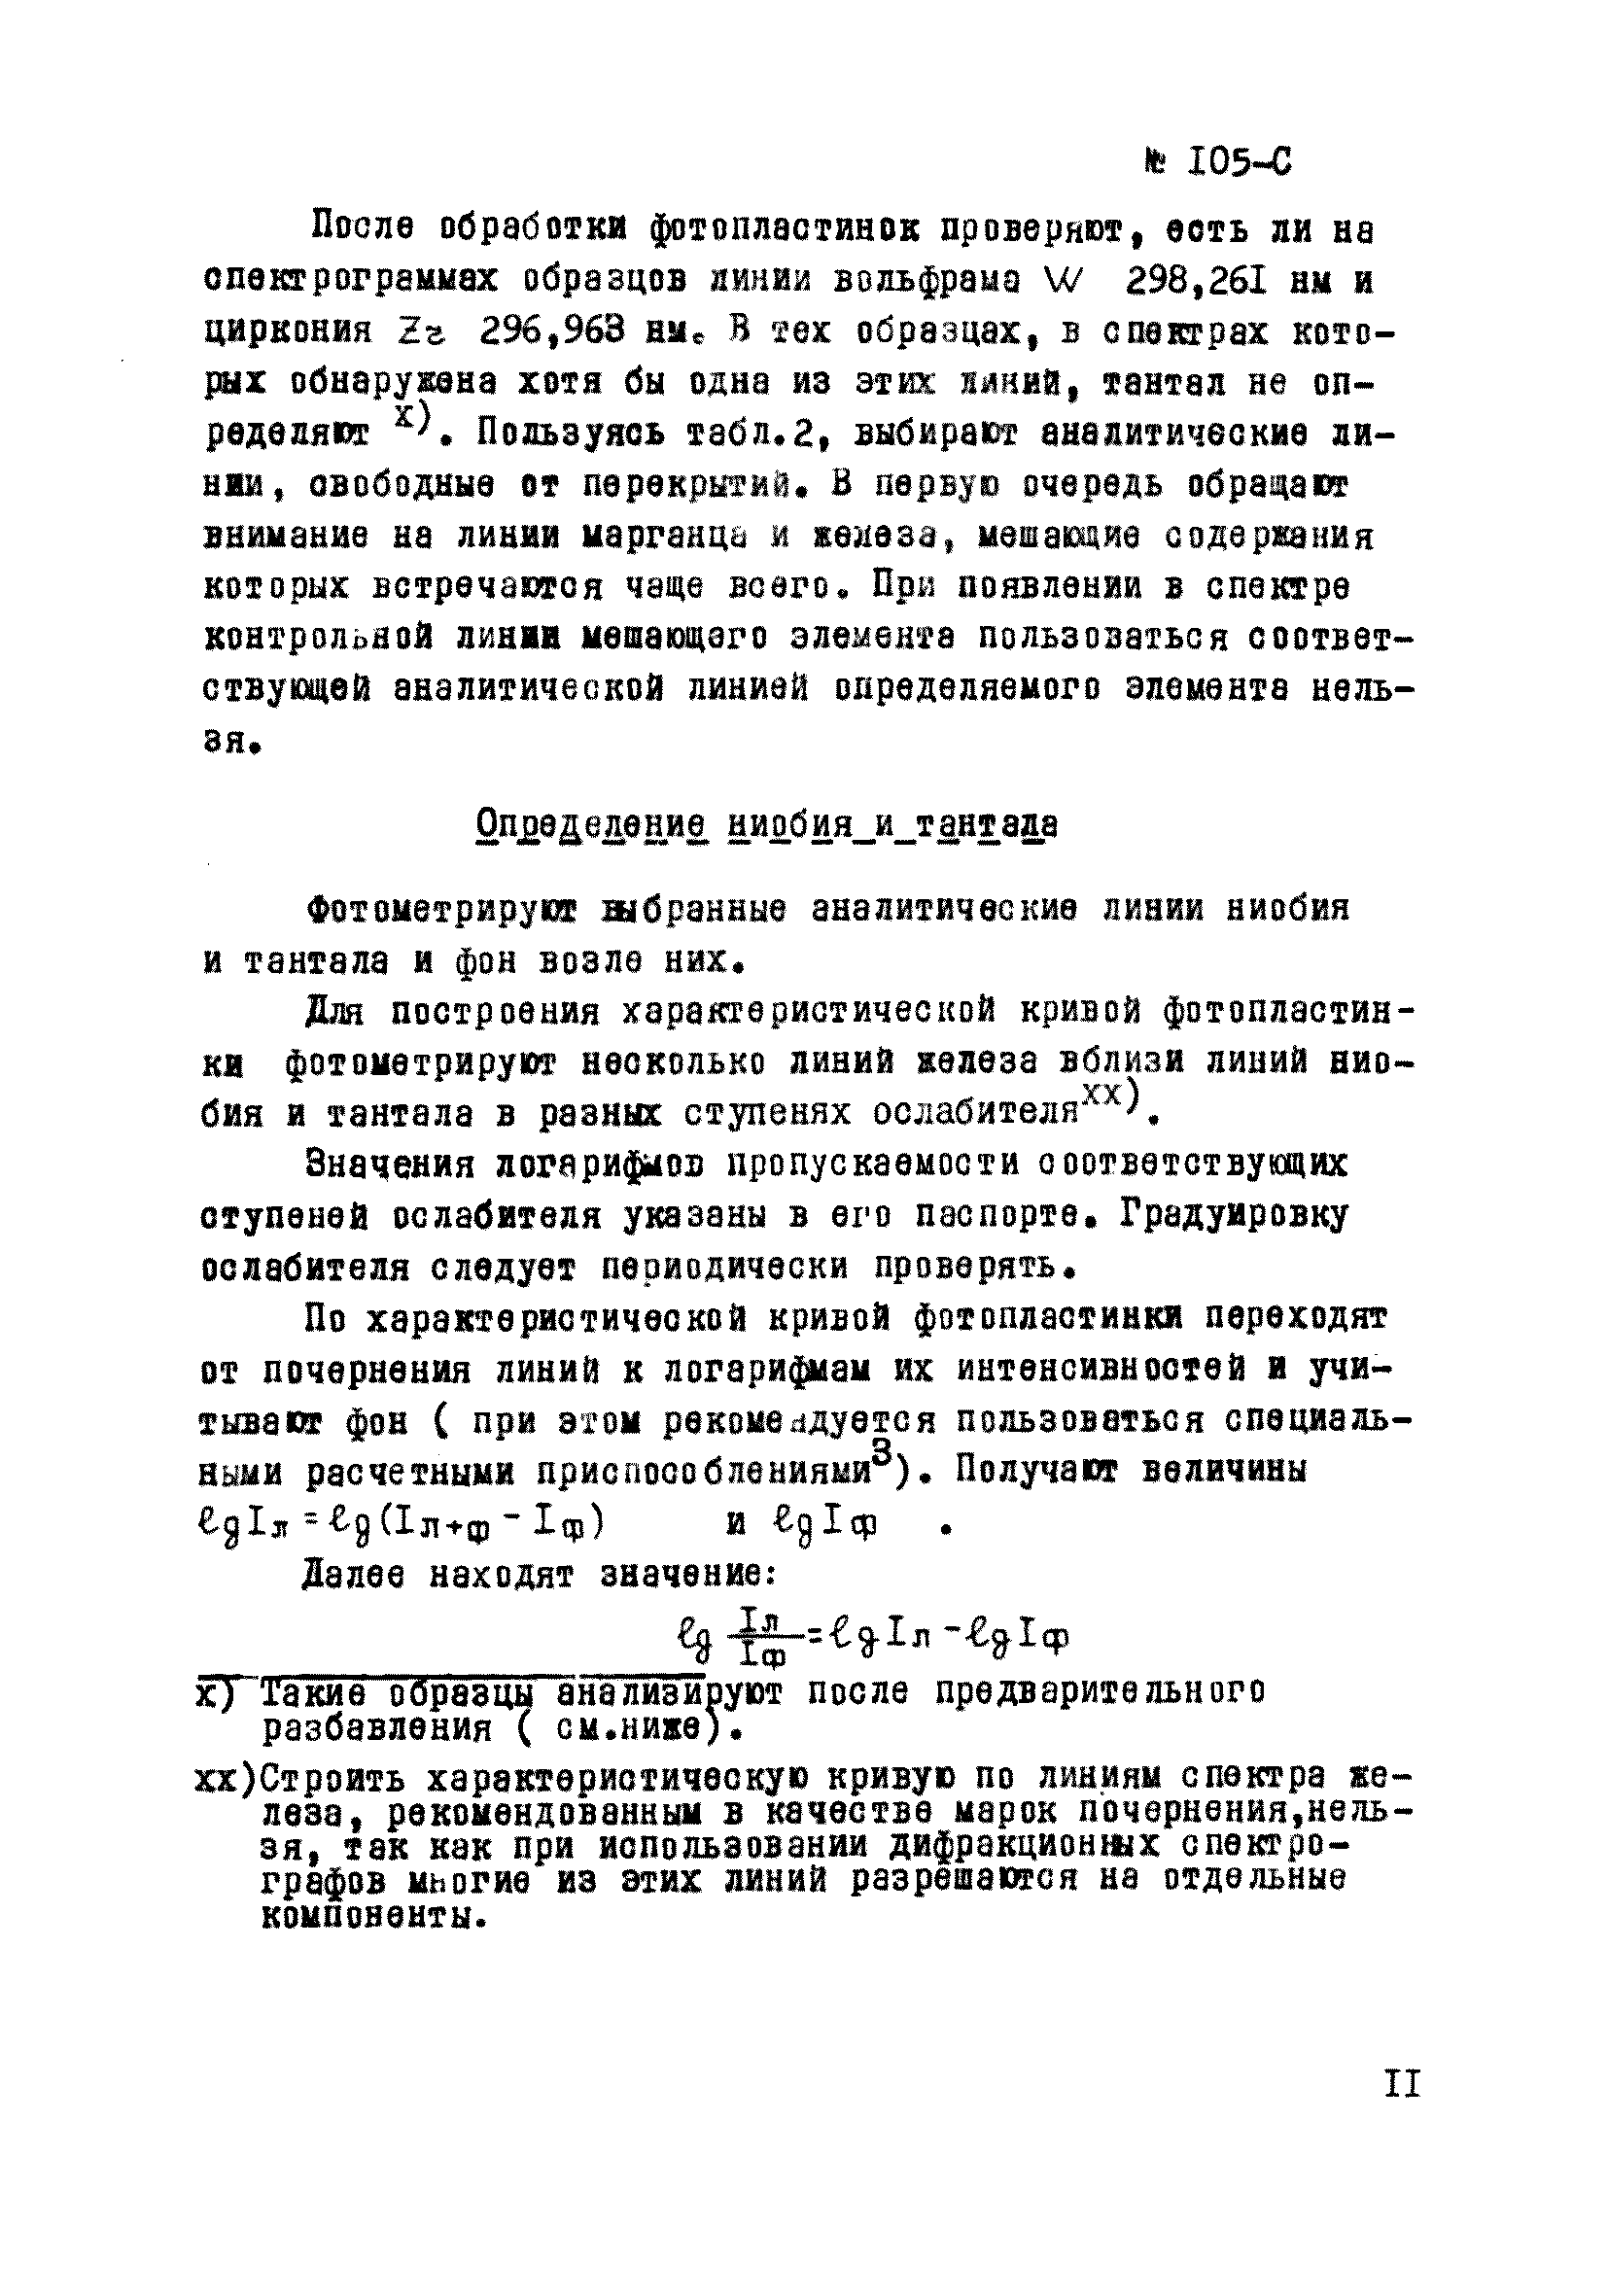 Инструкция НСАМ 105-С